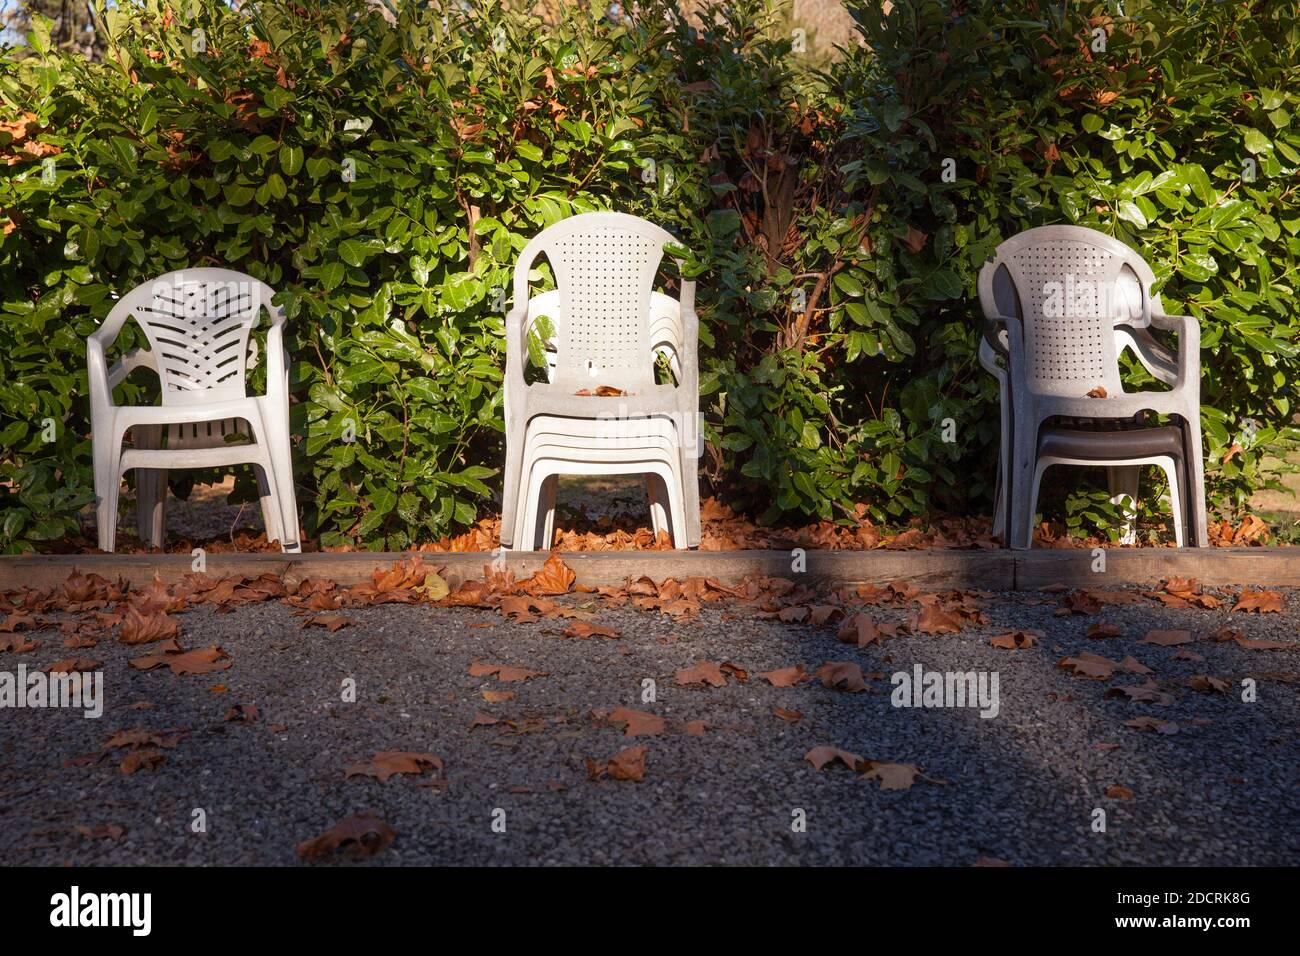 plastic garden chairs stacked in front of a hedge, Witten, North Rhine-Westphalia, Germany.  Plastikgartenstuehle stehen gestapelt vor einer Hecke, Wi Stock Photo